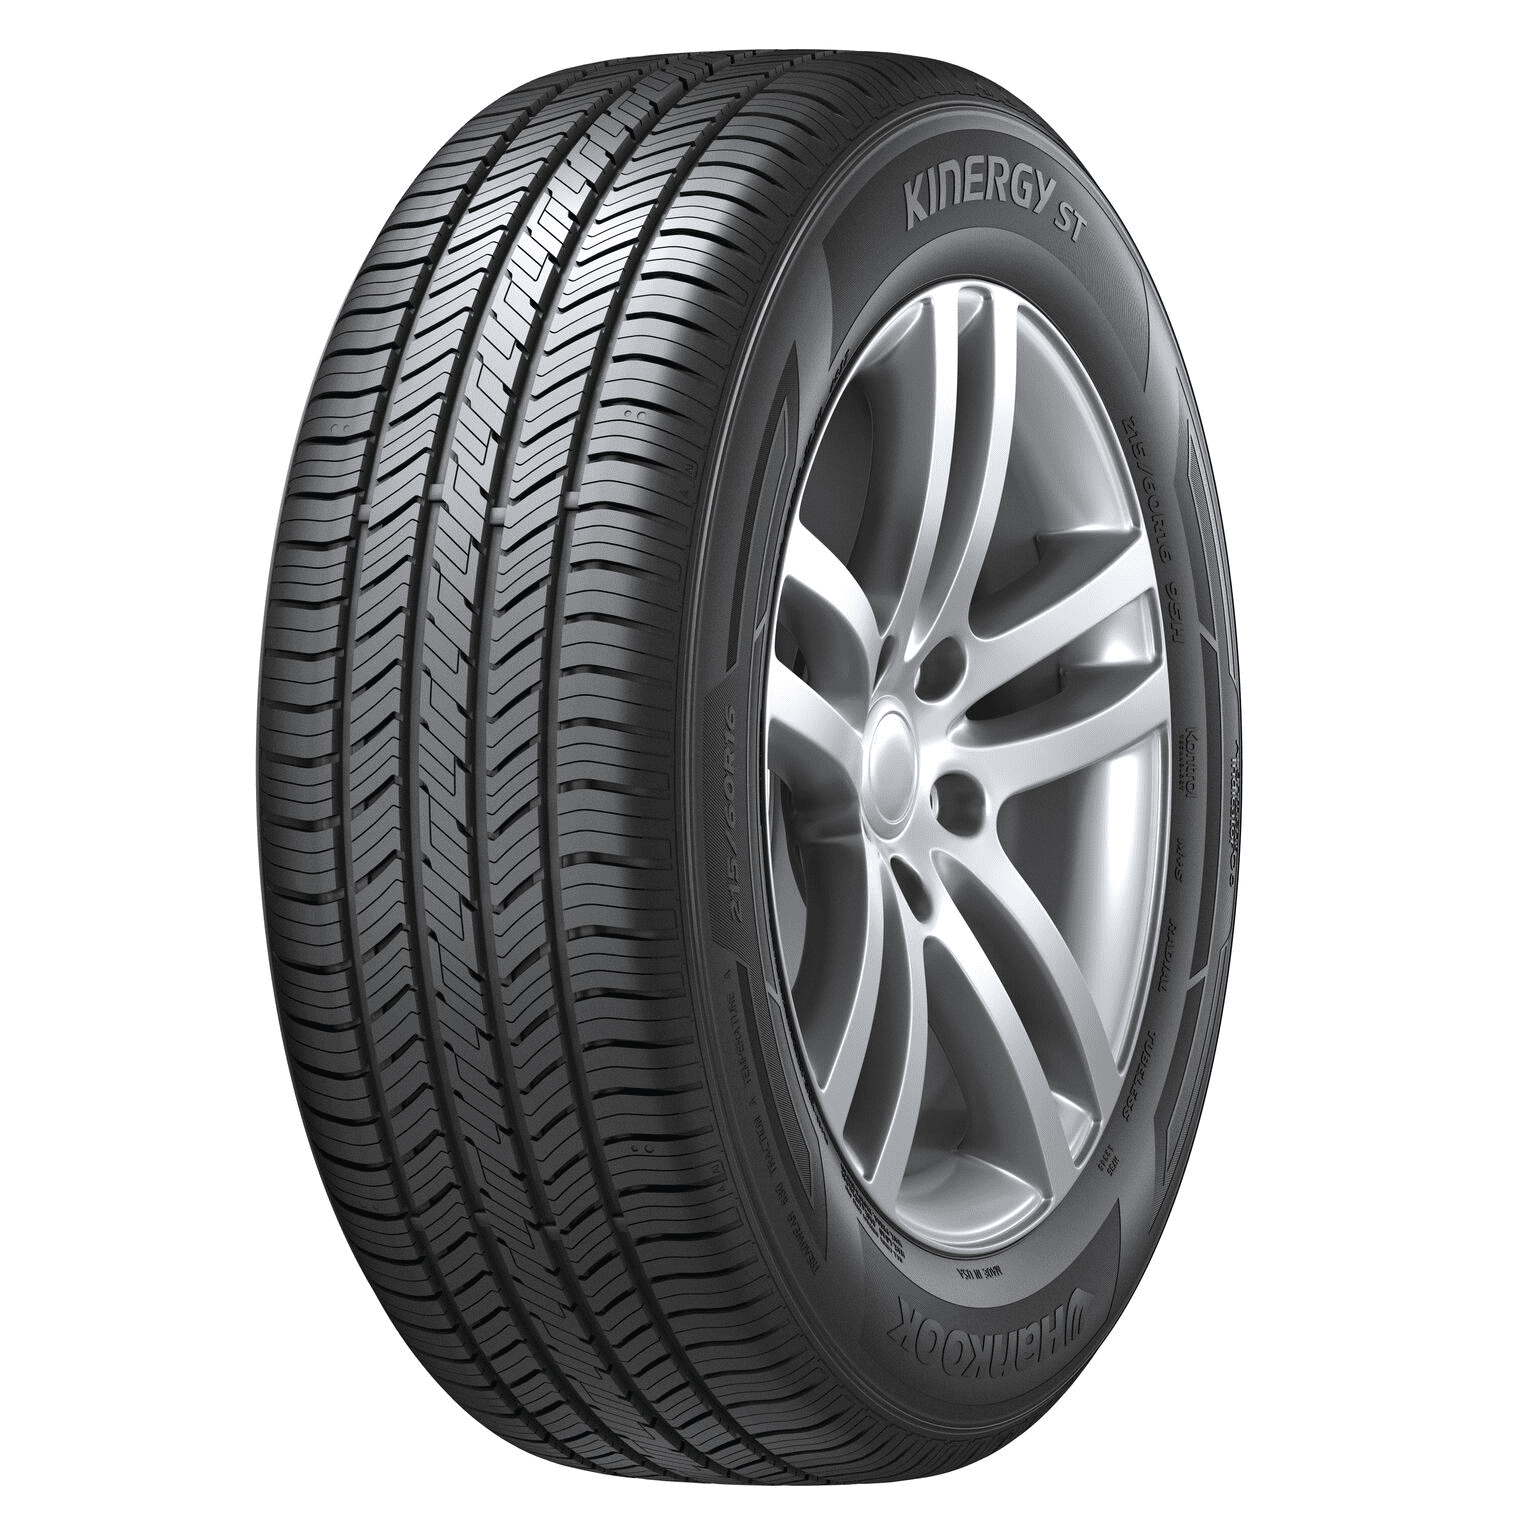 Bridgestone Turanza EL42 All-Season 205/65R16 94T Tire